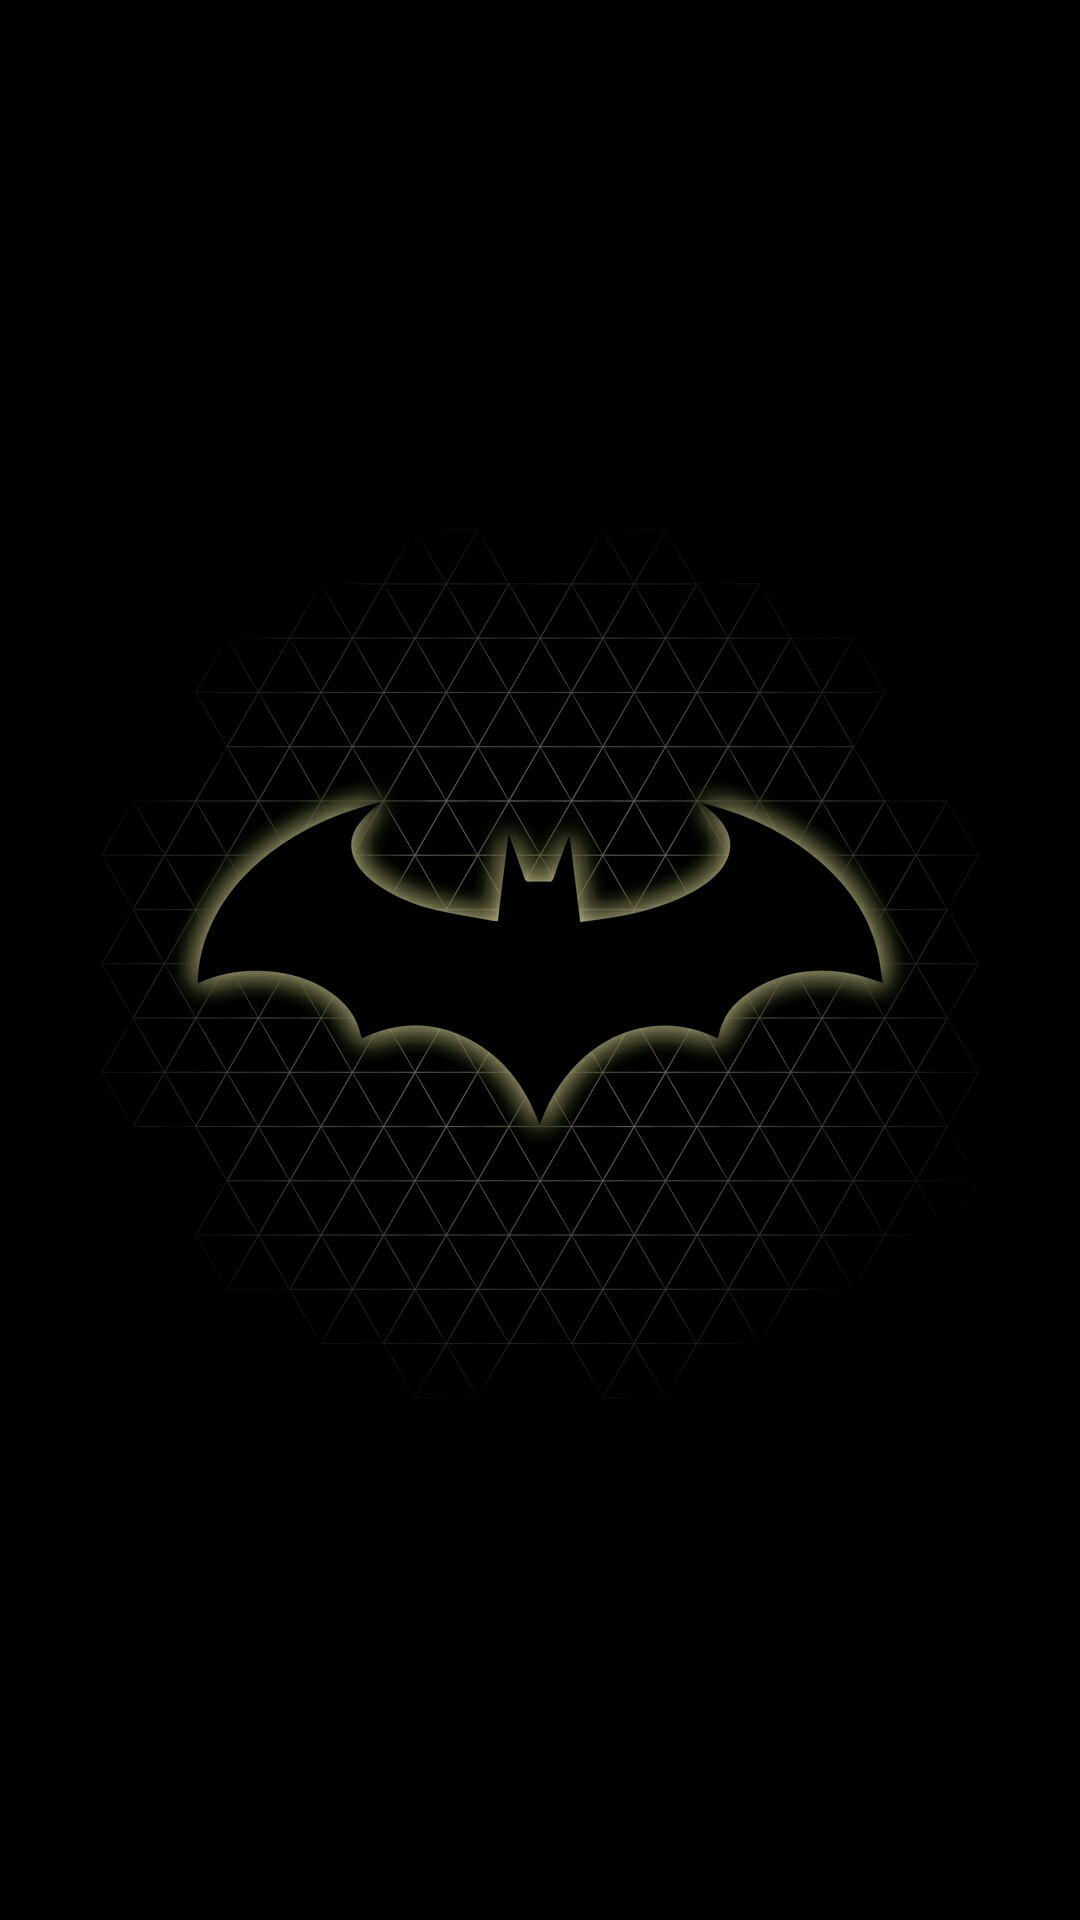 1080x1920 Batman dark knight